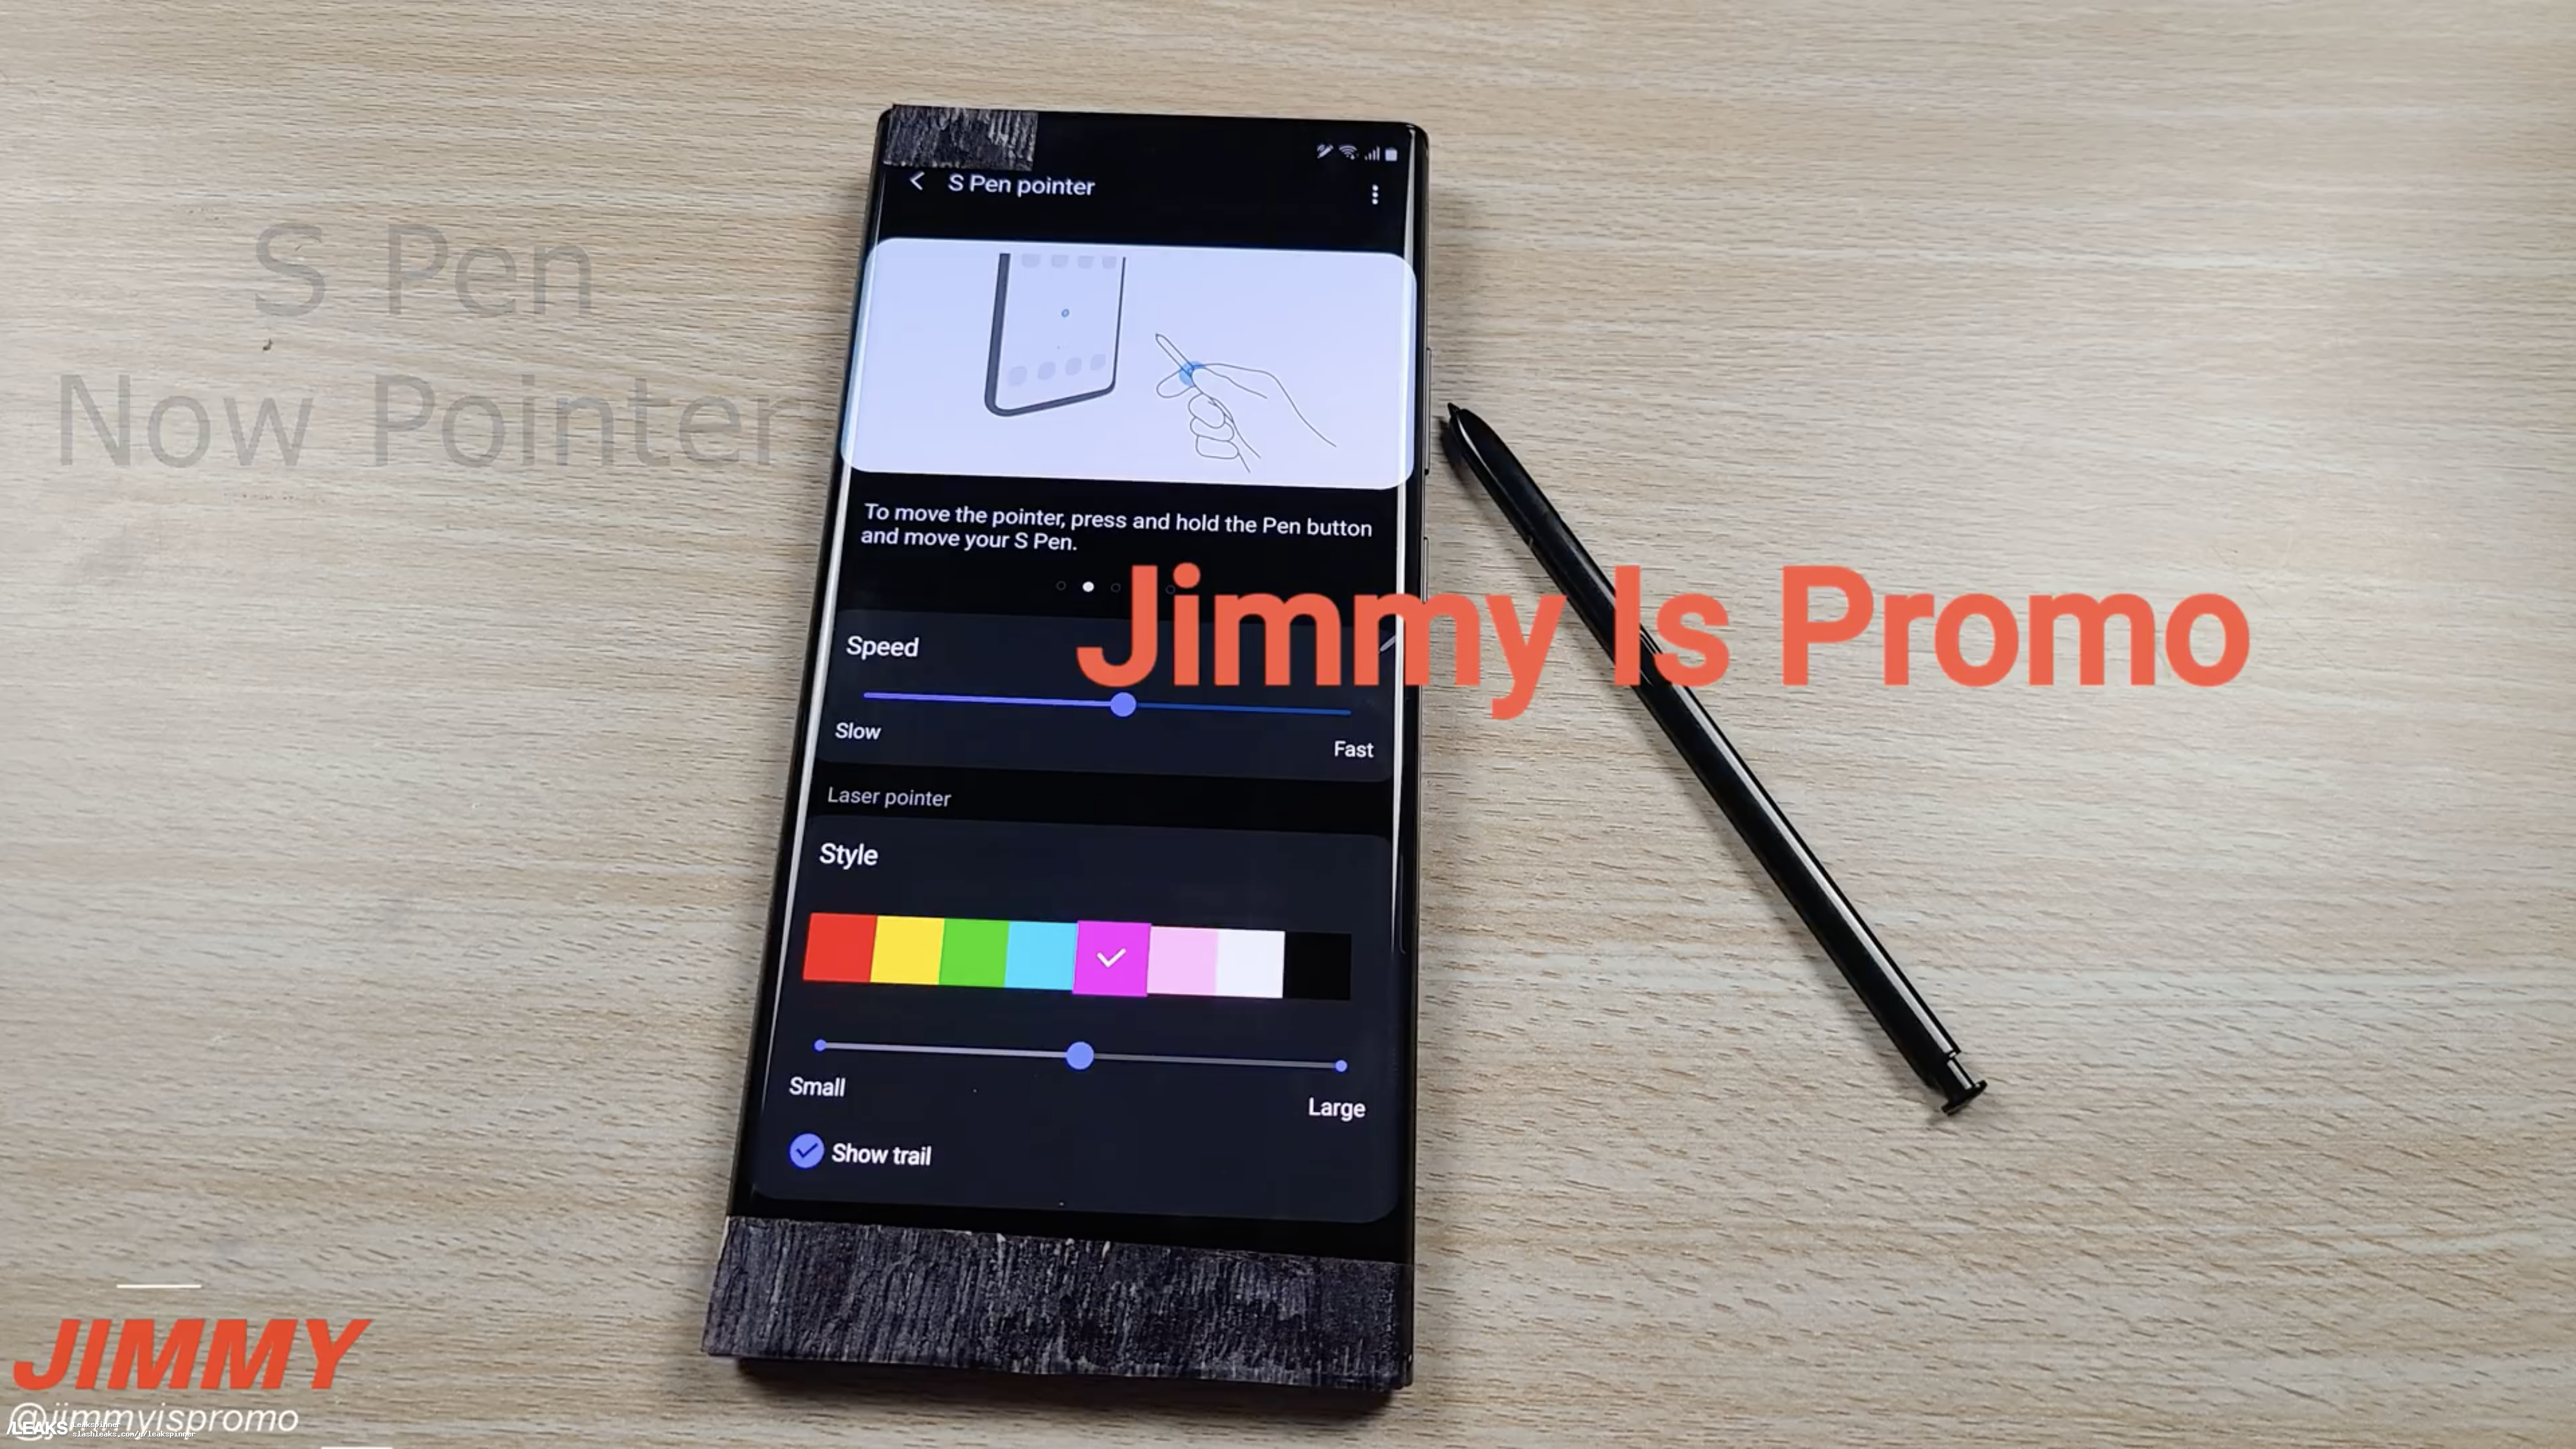 Samsung Galaxy Note 20 Ultra wideo cena S Pen plotki przecieki wycieki specyfikacja dane techniczne kiedy premiera